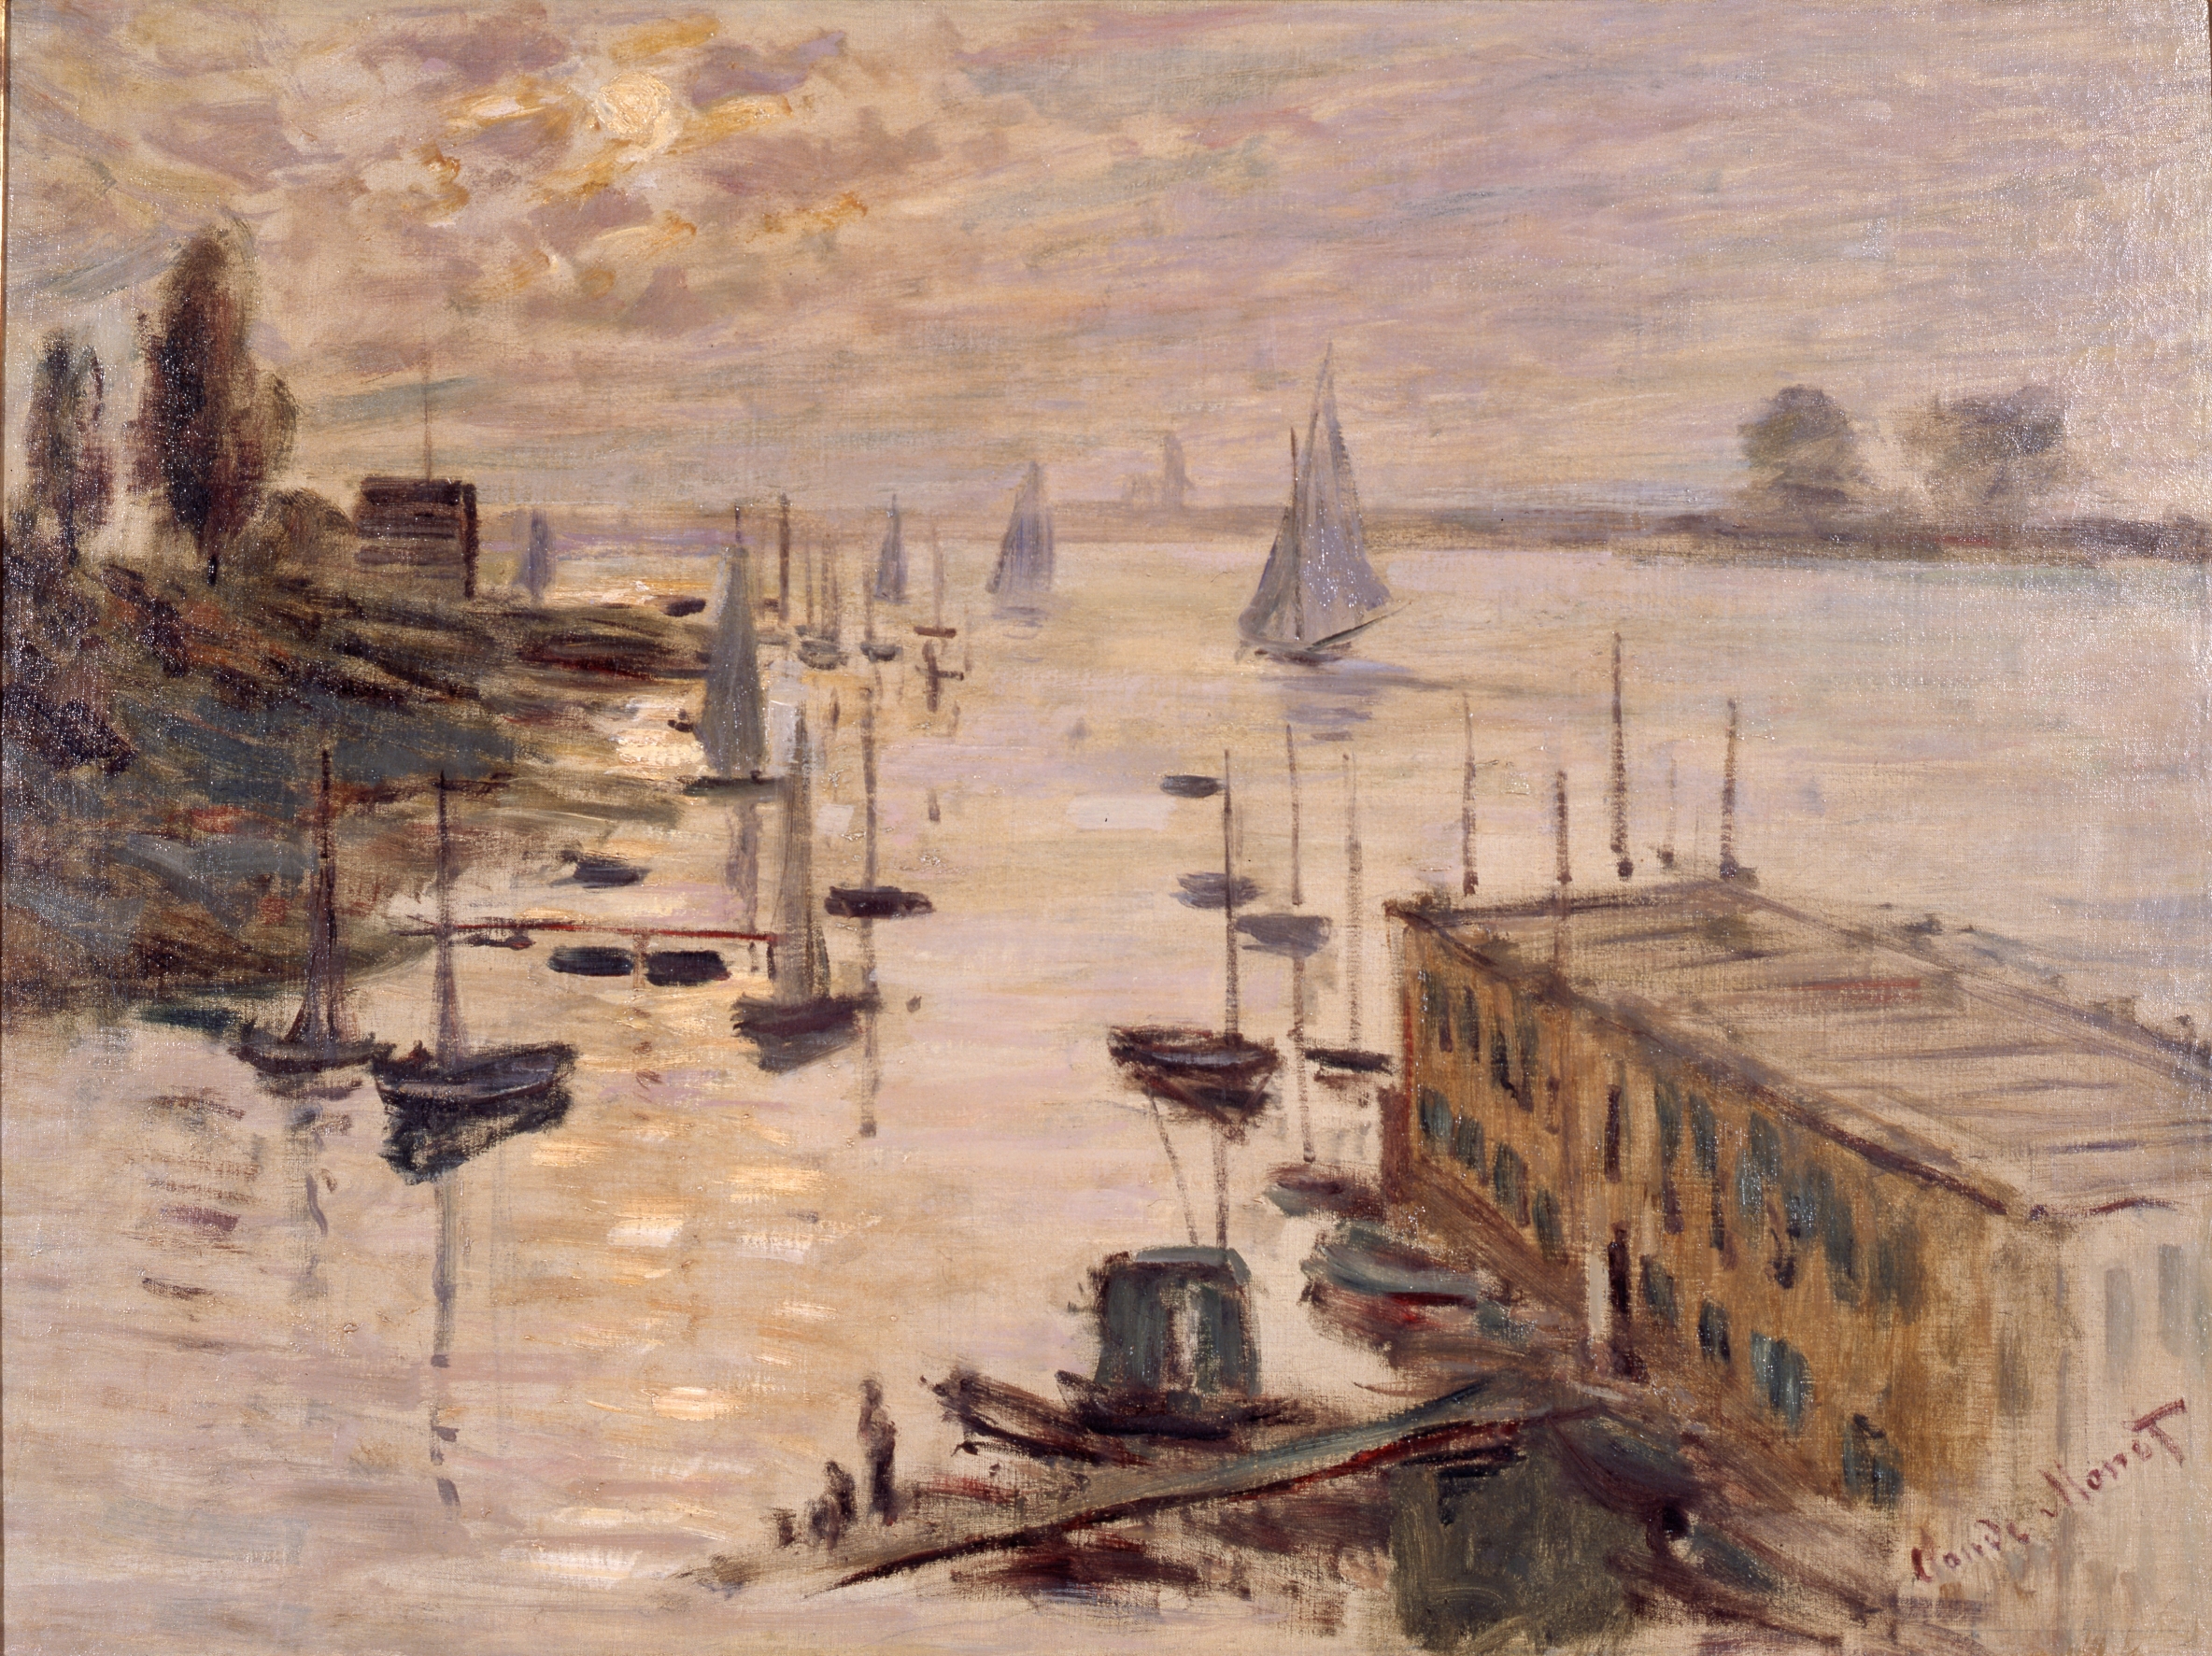 Claude MONET, Le Bassin d'Argenteuil vu depuis le pont routier, 1874, Mie Prefectural Art Museum